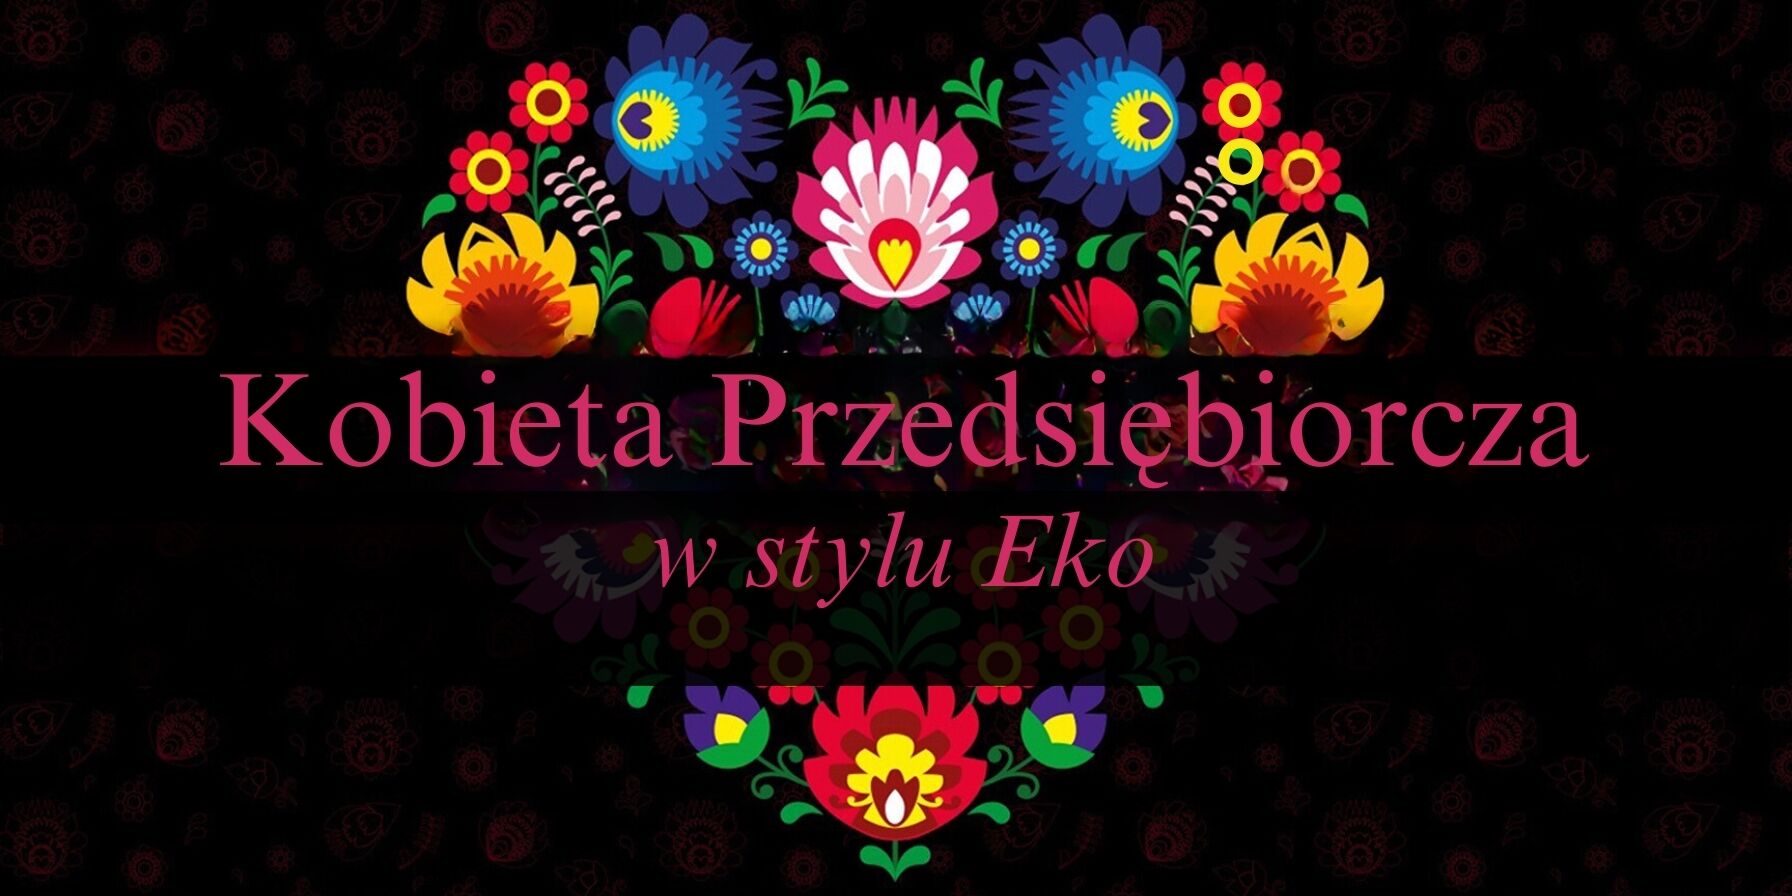 Grafika z napisem "Kobieta Przedsiębiorcza w stylu Eko" otoczonym przez symetryczny wzór z kolorowych kwiatów i liści na ciemnym tle.